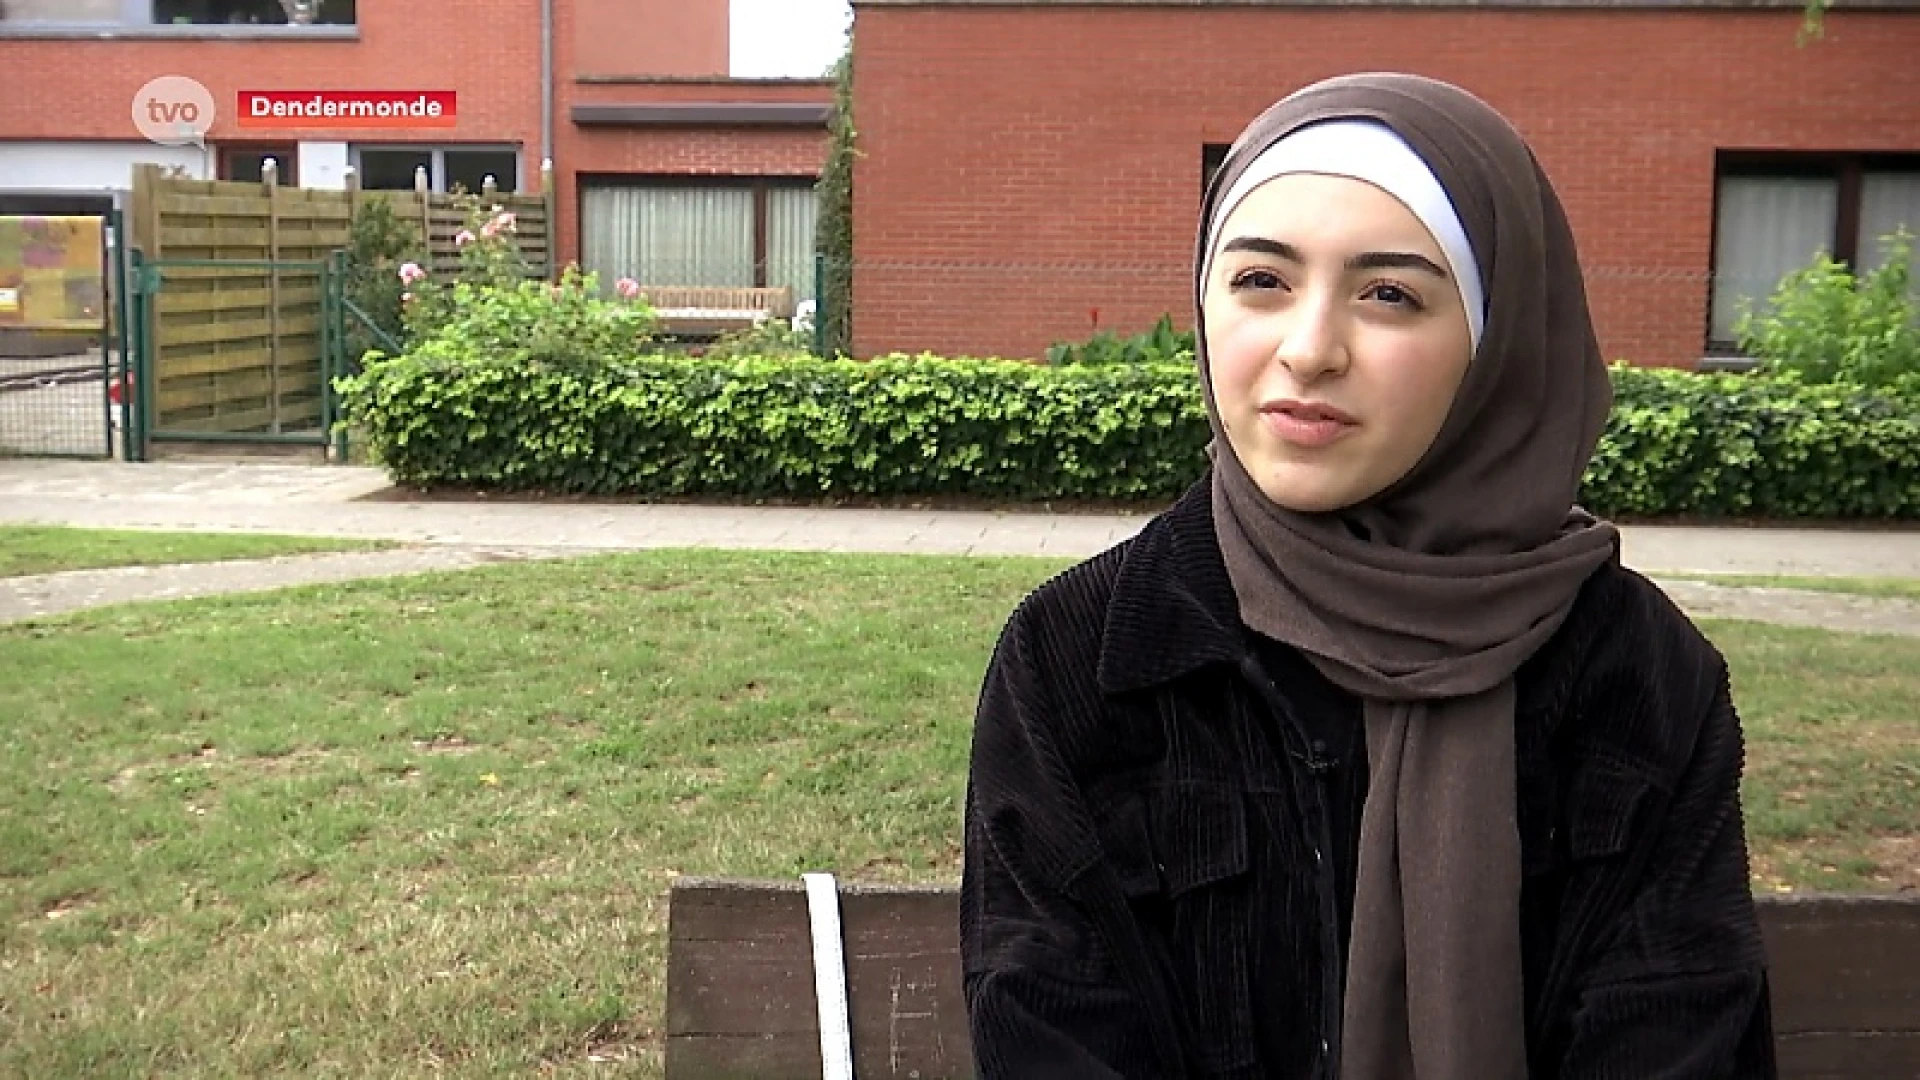 Jobstudente met hoofddoek geweigerd in Albert Heijn Dendermonde: "Ik was in shock"